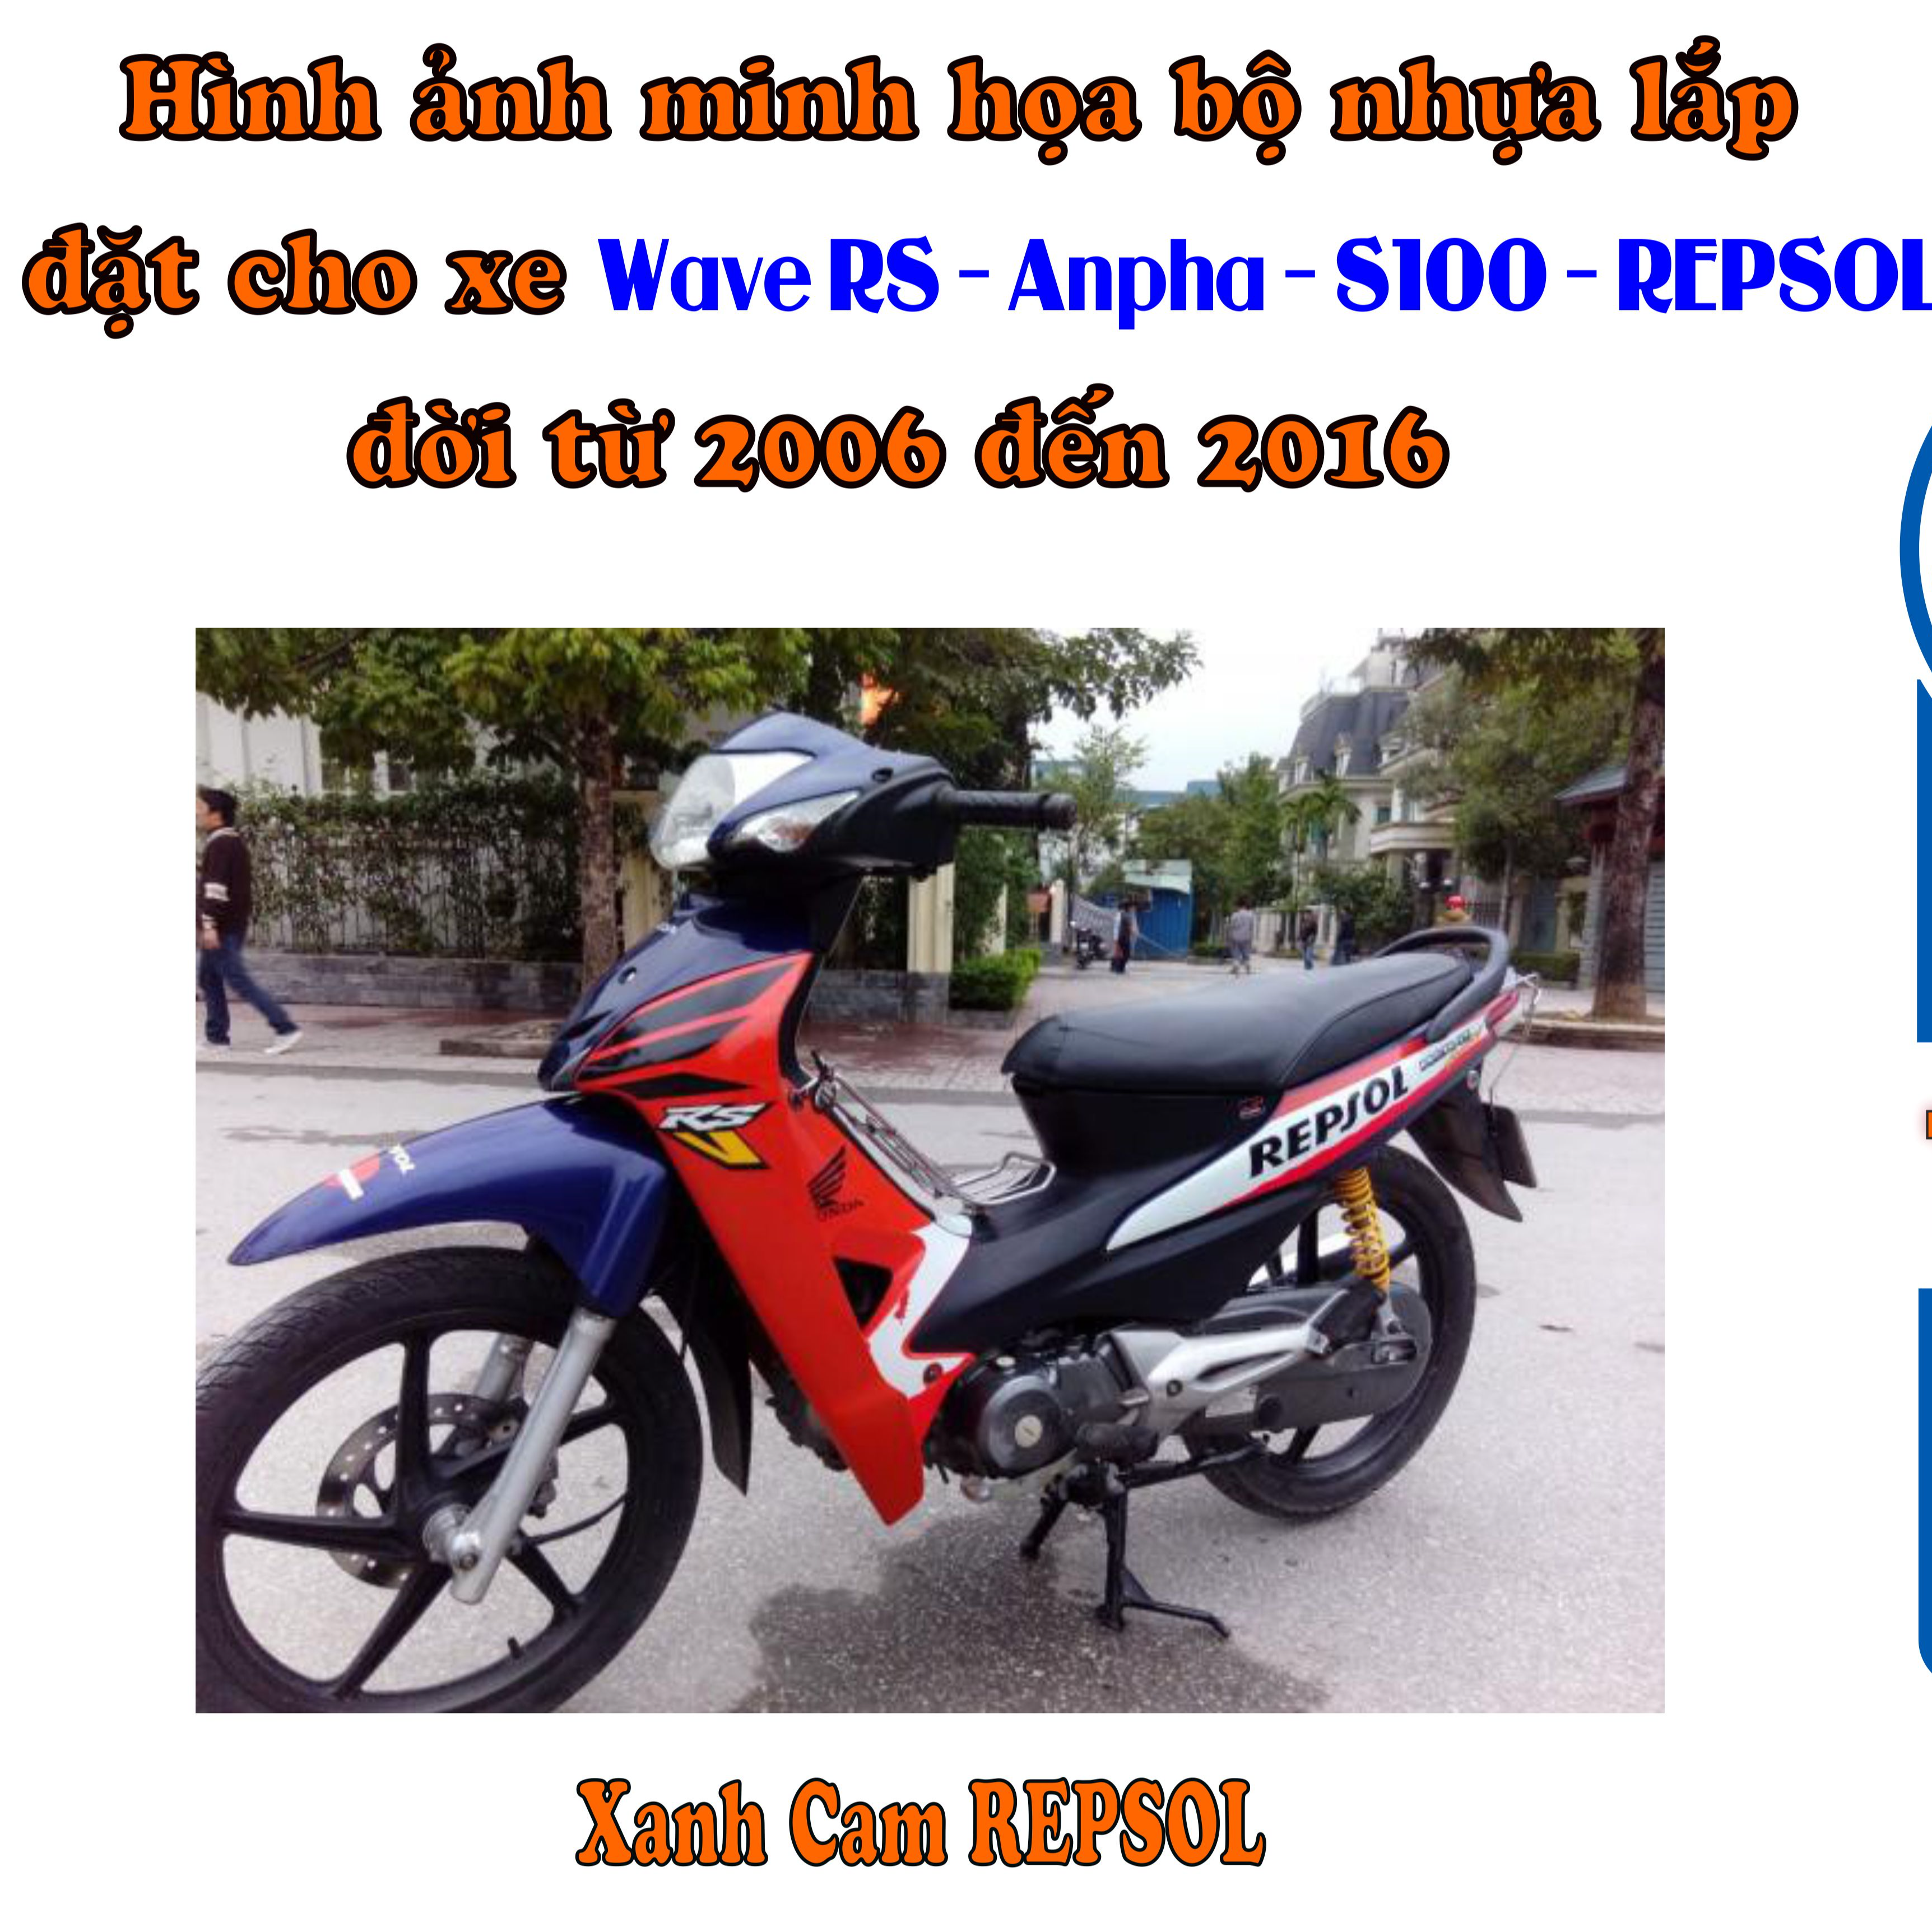 Bộ nhựa màu XANH CAM REPSOL cho xe Wave RS - Anpha - S100 đời 2006 đến 2016_TKB -990(8332)